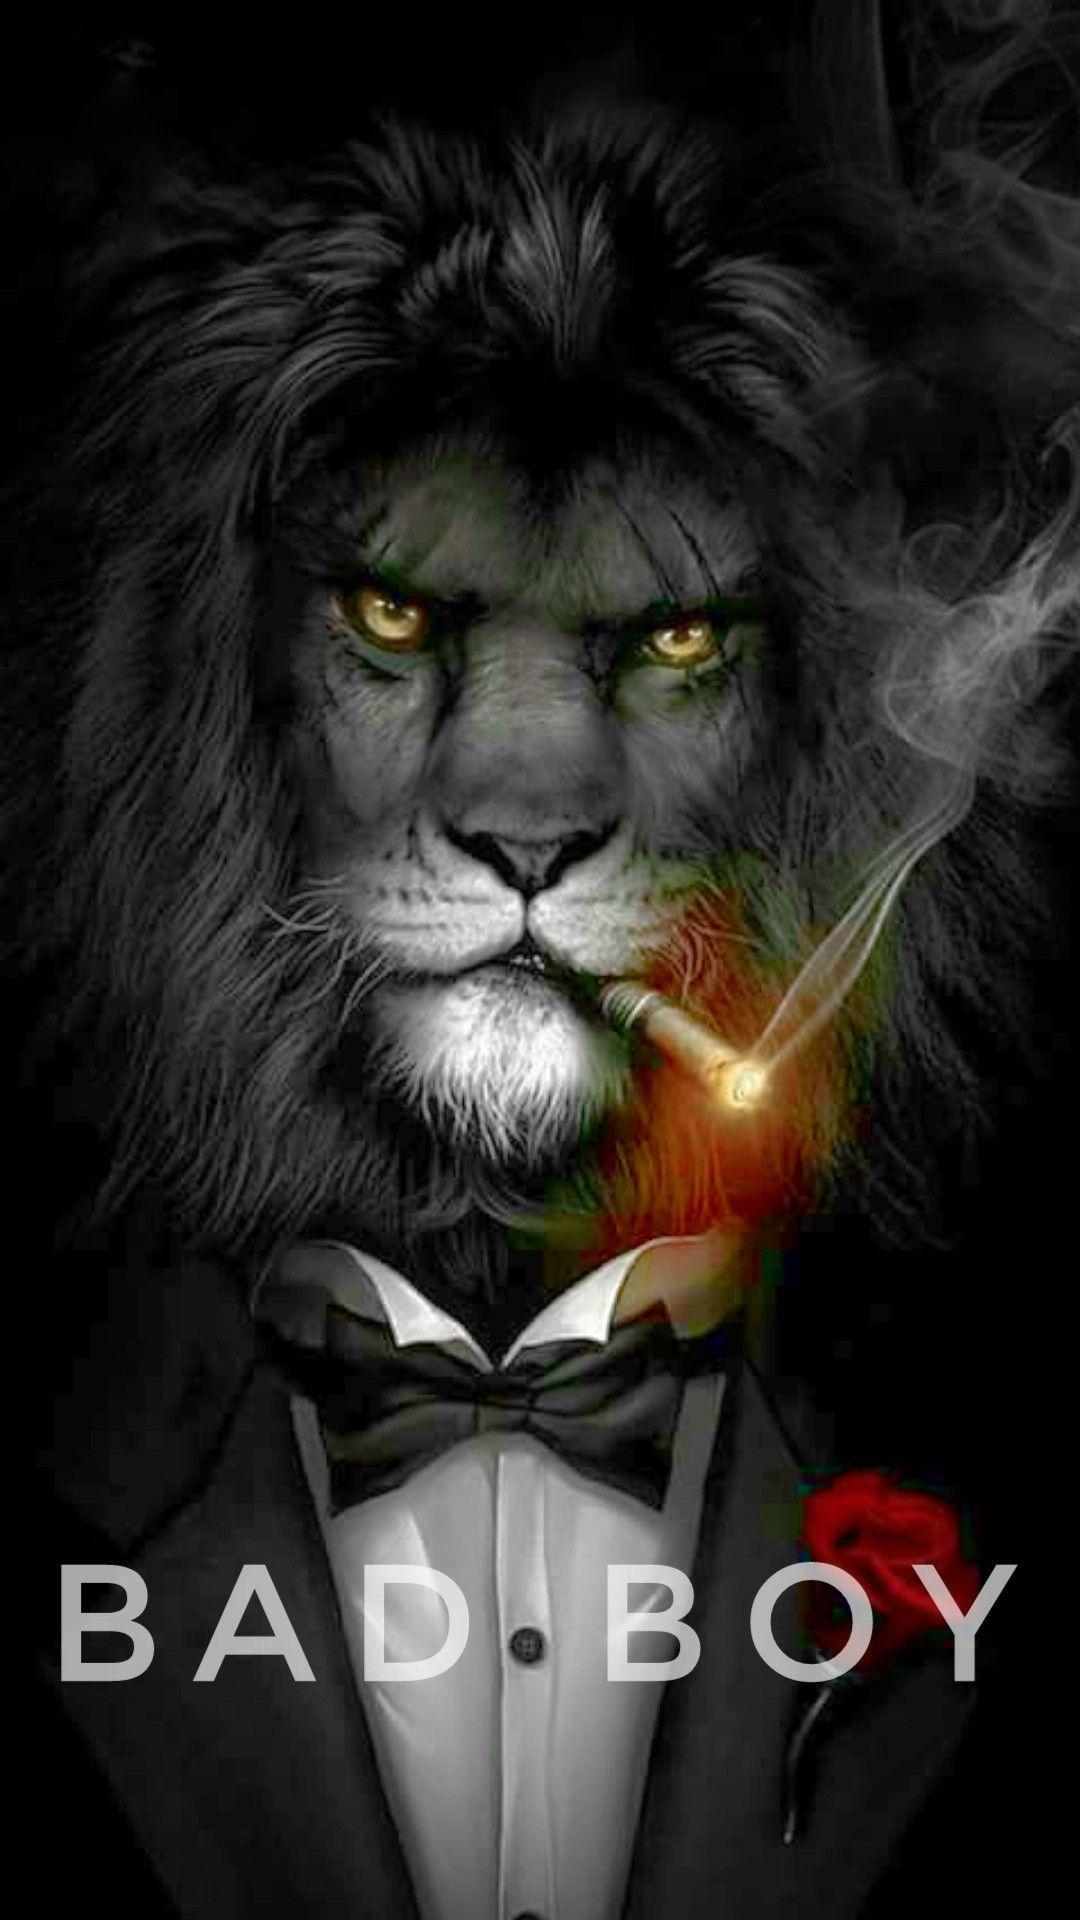 Bad boy. Lion HD wallpaper, Lion art, Lion picture